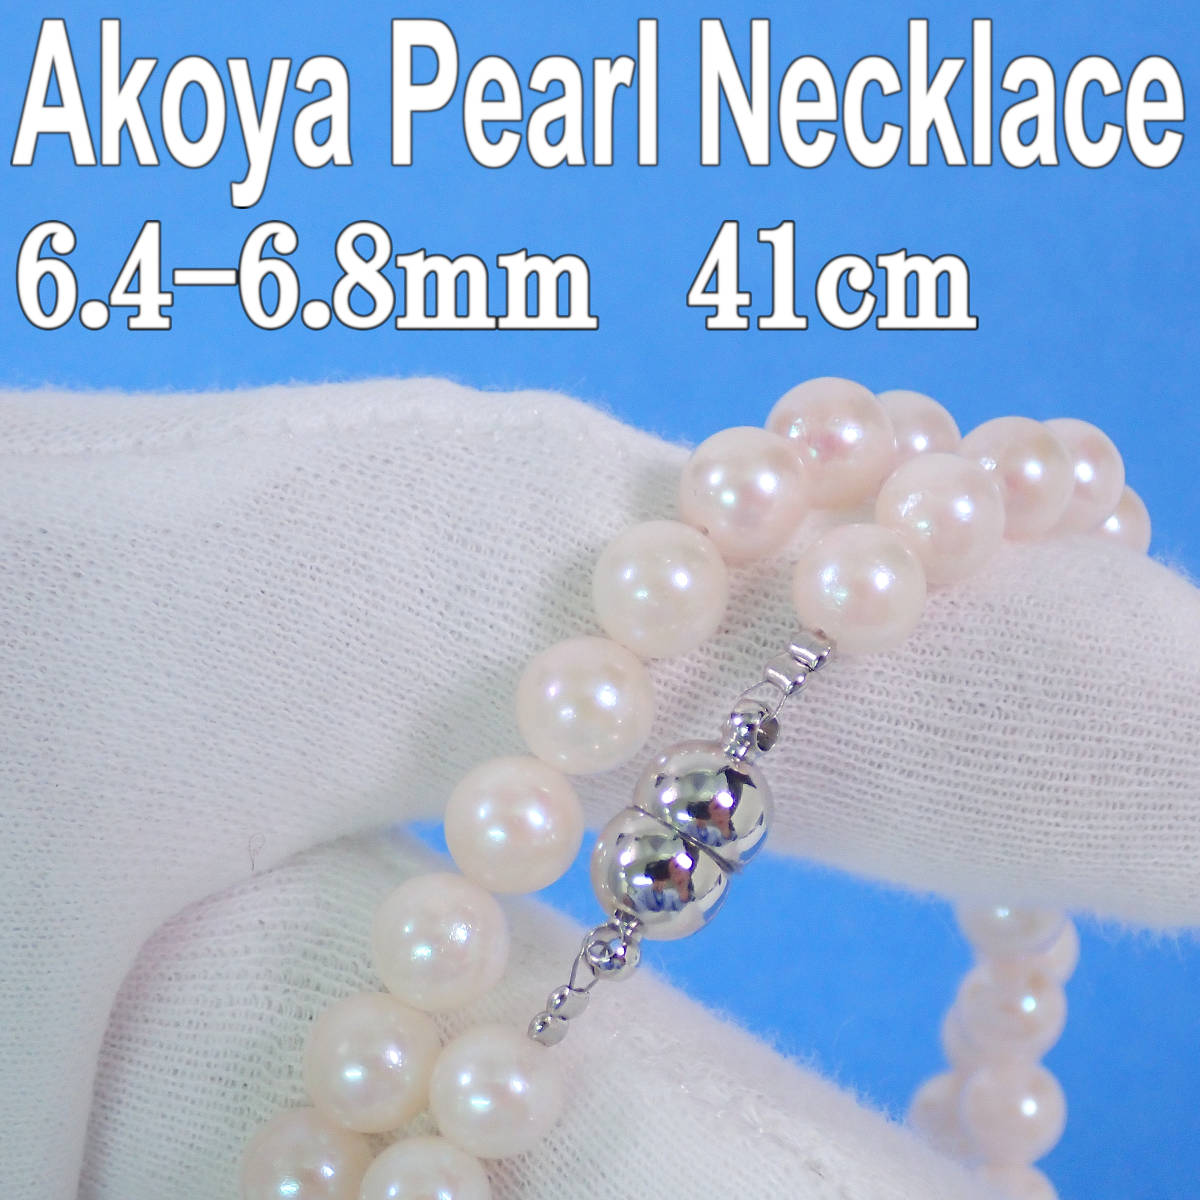 アコヤ本真珠 ネックレス(6.4-6.8mm 41cm 27g) イヤリング(6.7mm) Akoya Pearl Necklace